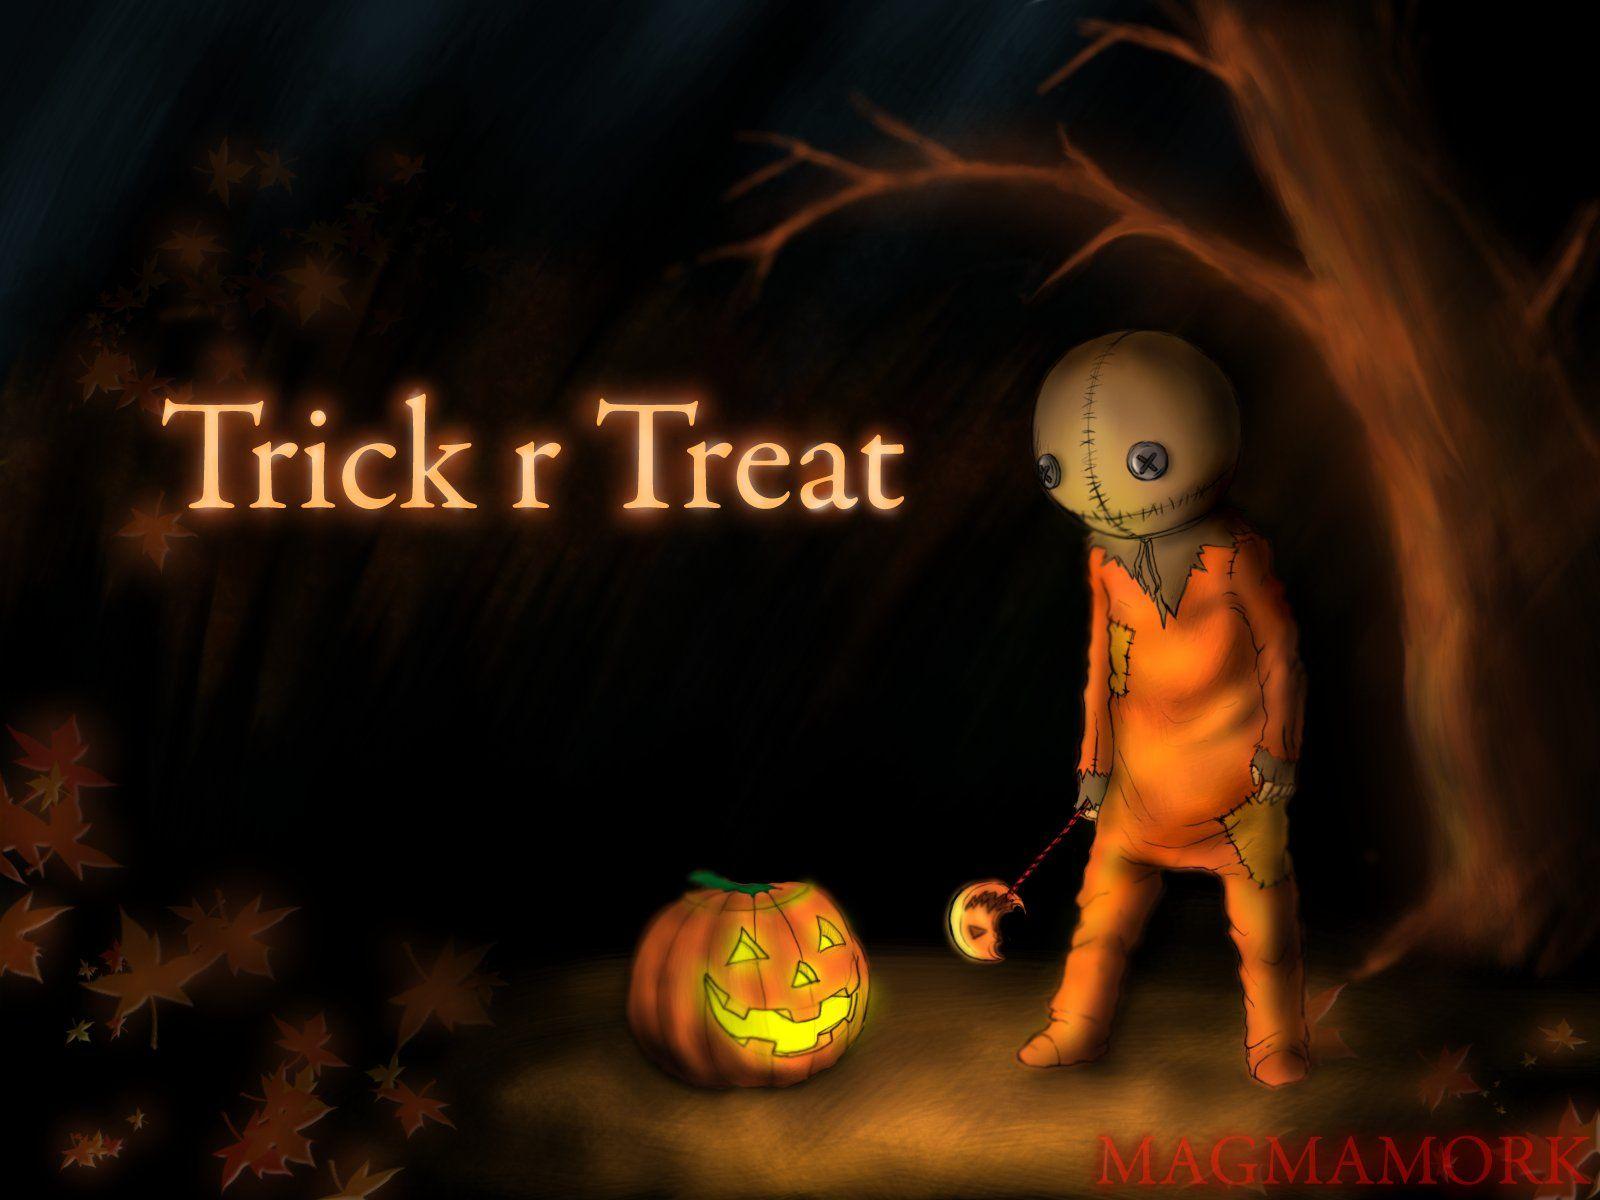 TRICK R TREAT horror thriller dark halloween movie film